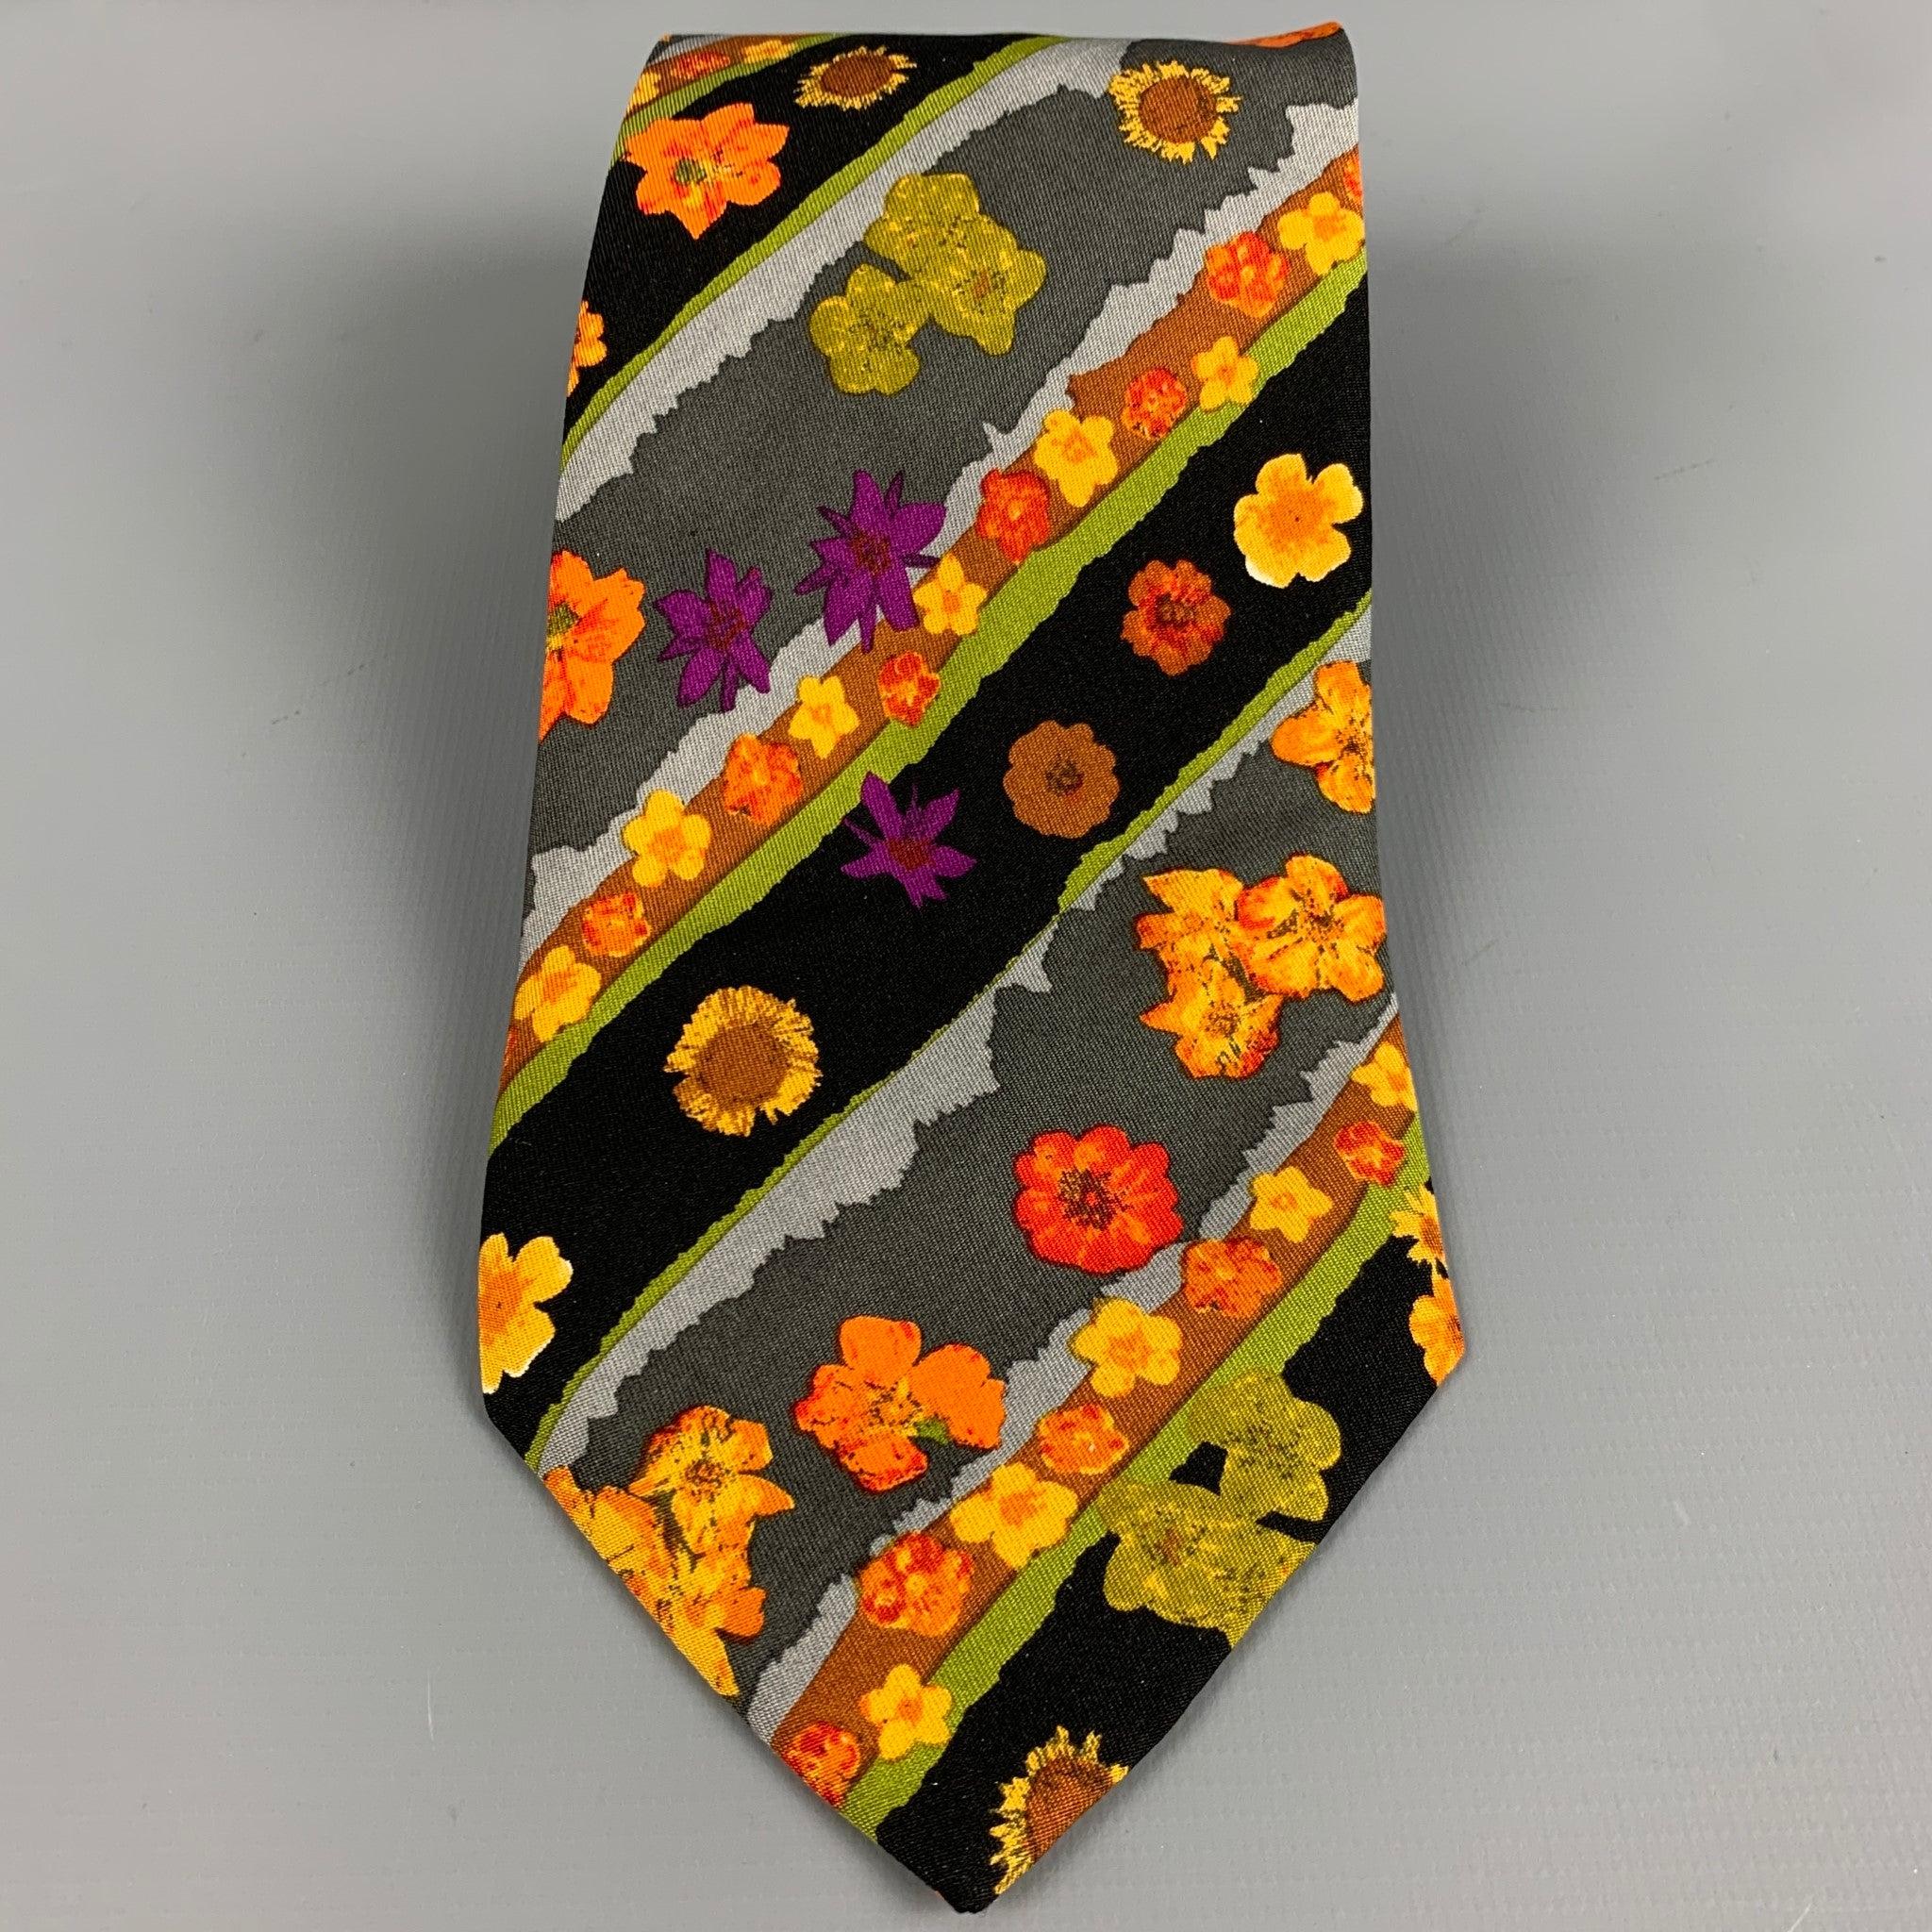 YVES SAINT LAURENT
Cravate en soie multicolore avec un imprimé floral aquarelle. Fabriqué en Italie. Très bon état. Marques mineures. 

Mesures : 
  Largeur : 3,5 pouces Longueur : 59 pouces 
  
  
 
Référence : 127305
Catégorie : Cravate
Plus de